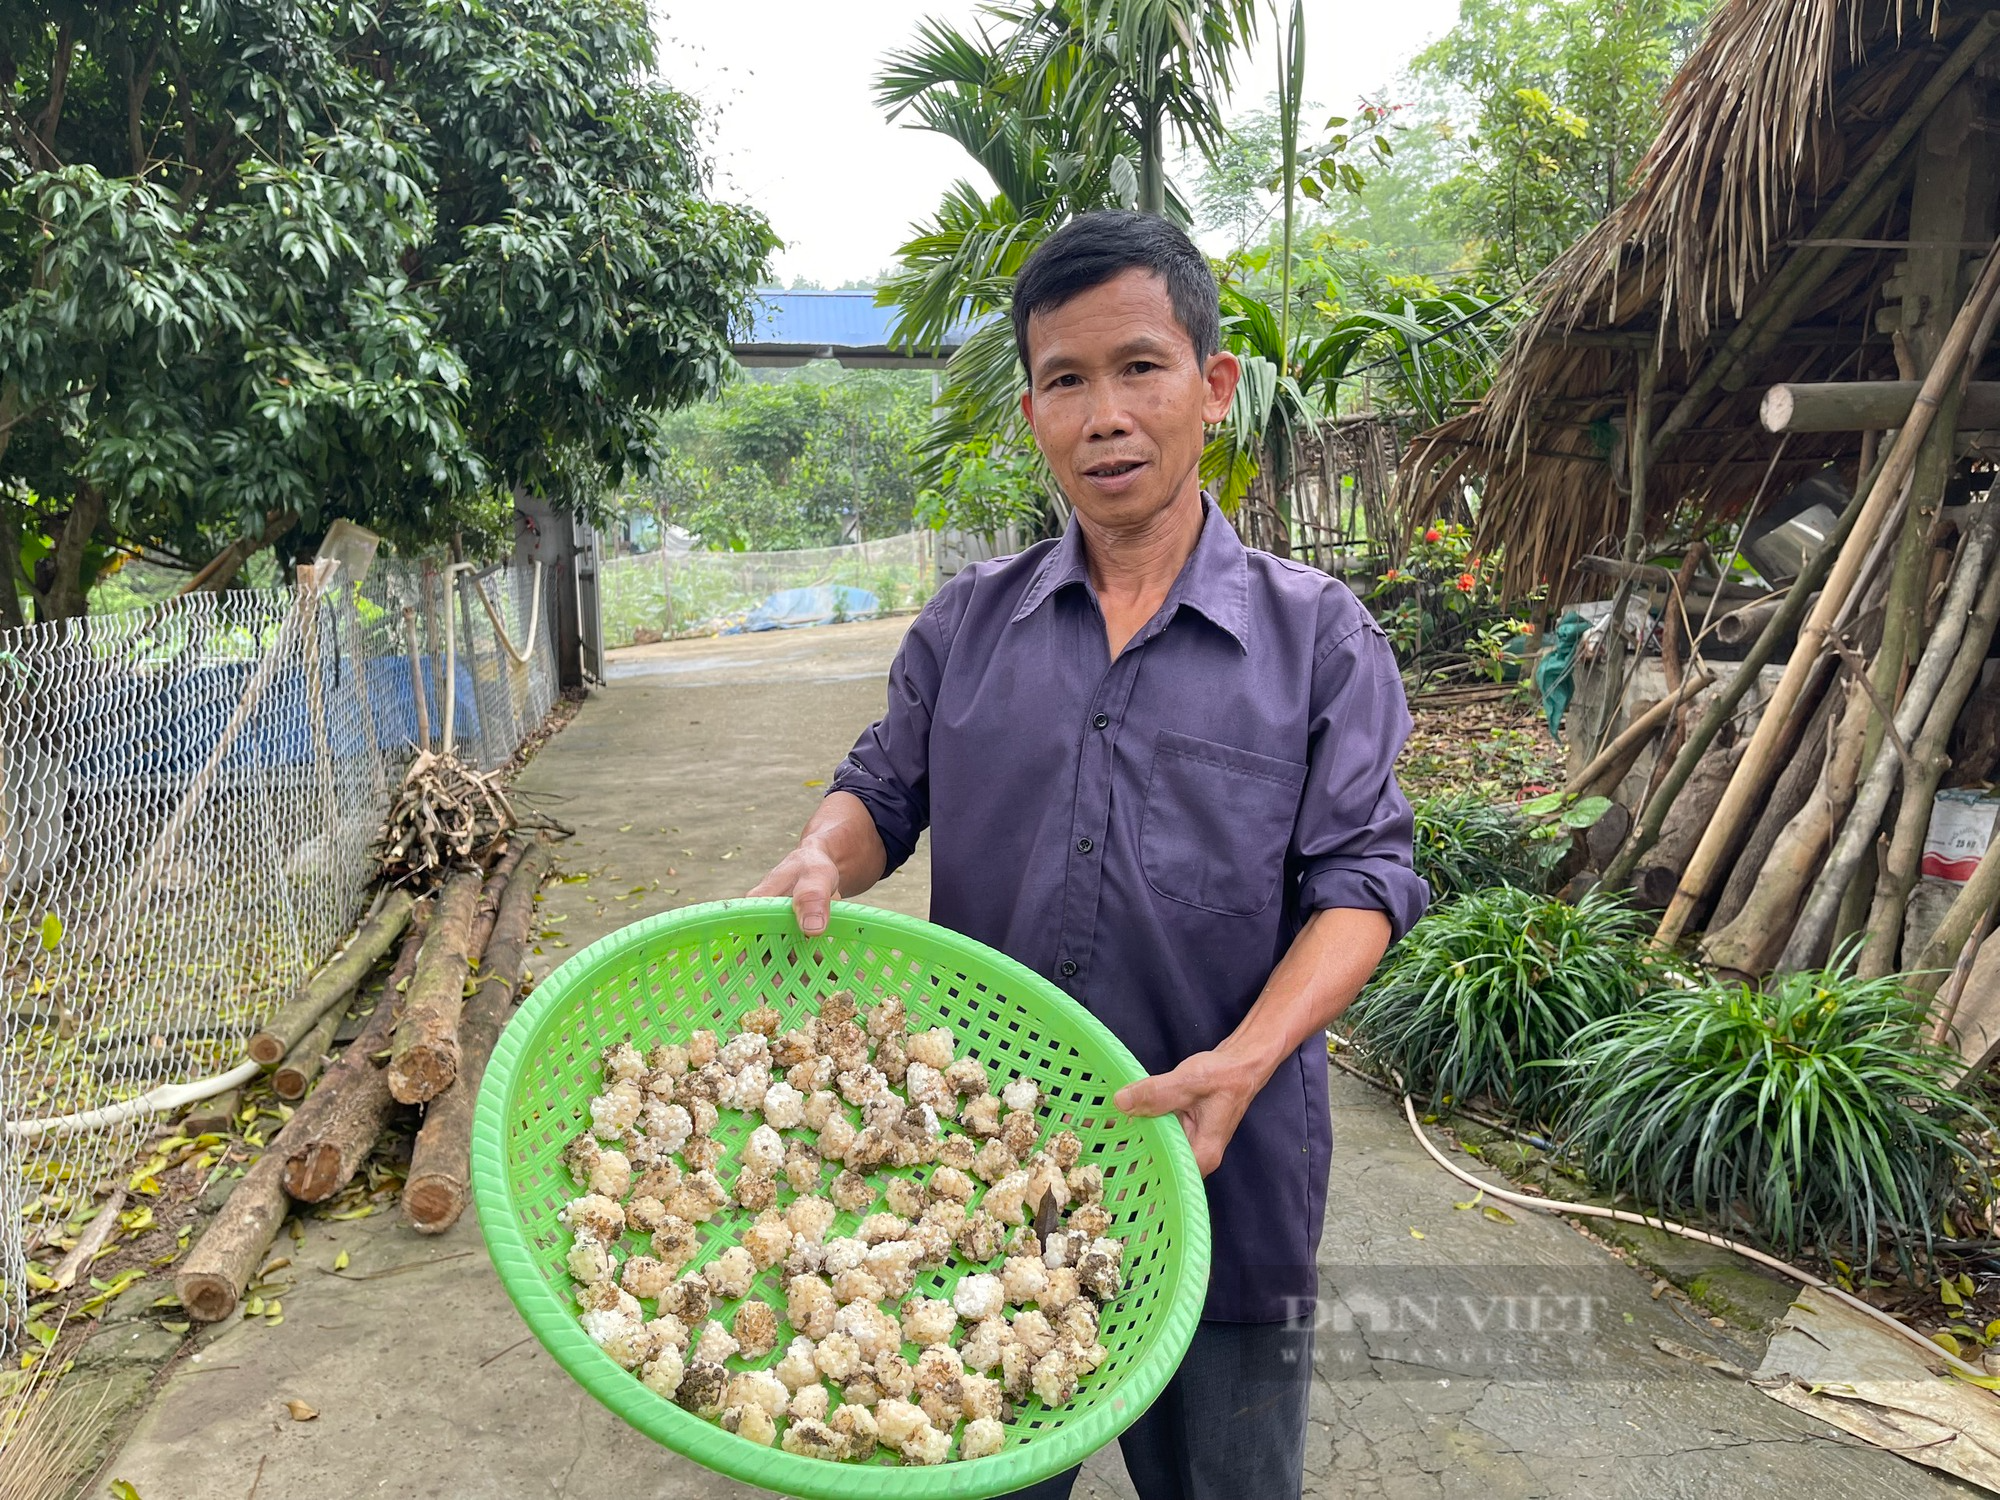 Nuôi ốc nhồi thu hơn 200 triệu đồng/năm, ông nông dân Thái Nguyên trở thành hộ sản xuất kinh doanh giỏi - Ảnh 8.